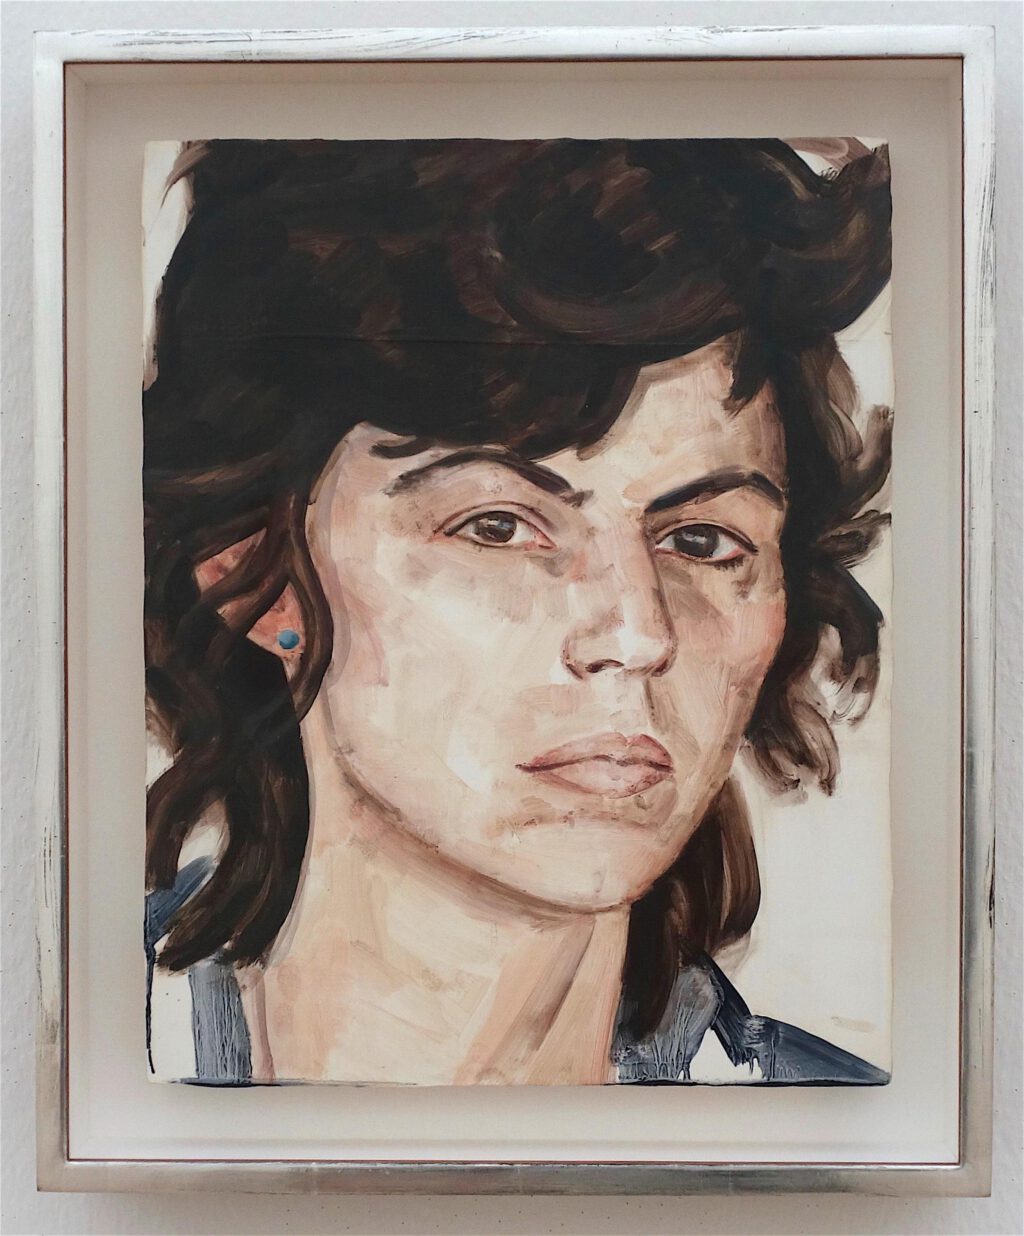 エリザベス・ペイトン「イサ・ゲンツケン1980年」木材に油彩、35.6 x 27.9 センチ、2010年